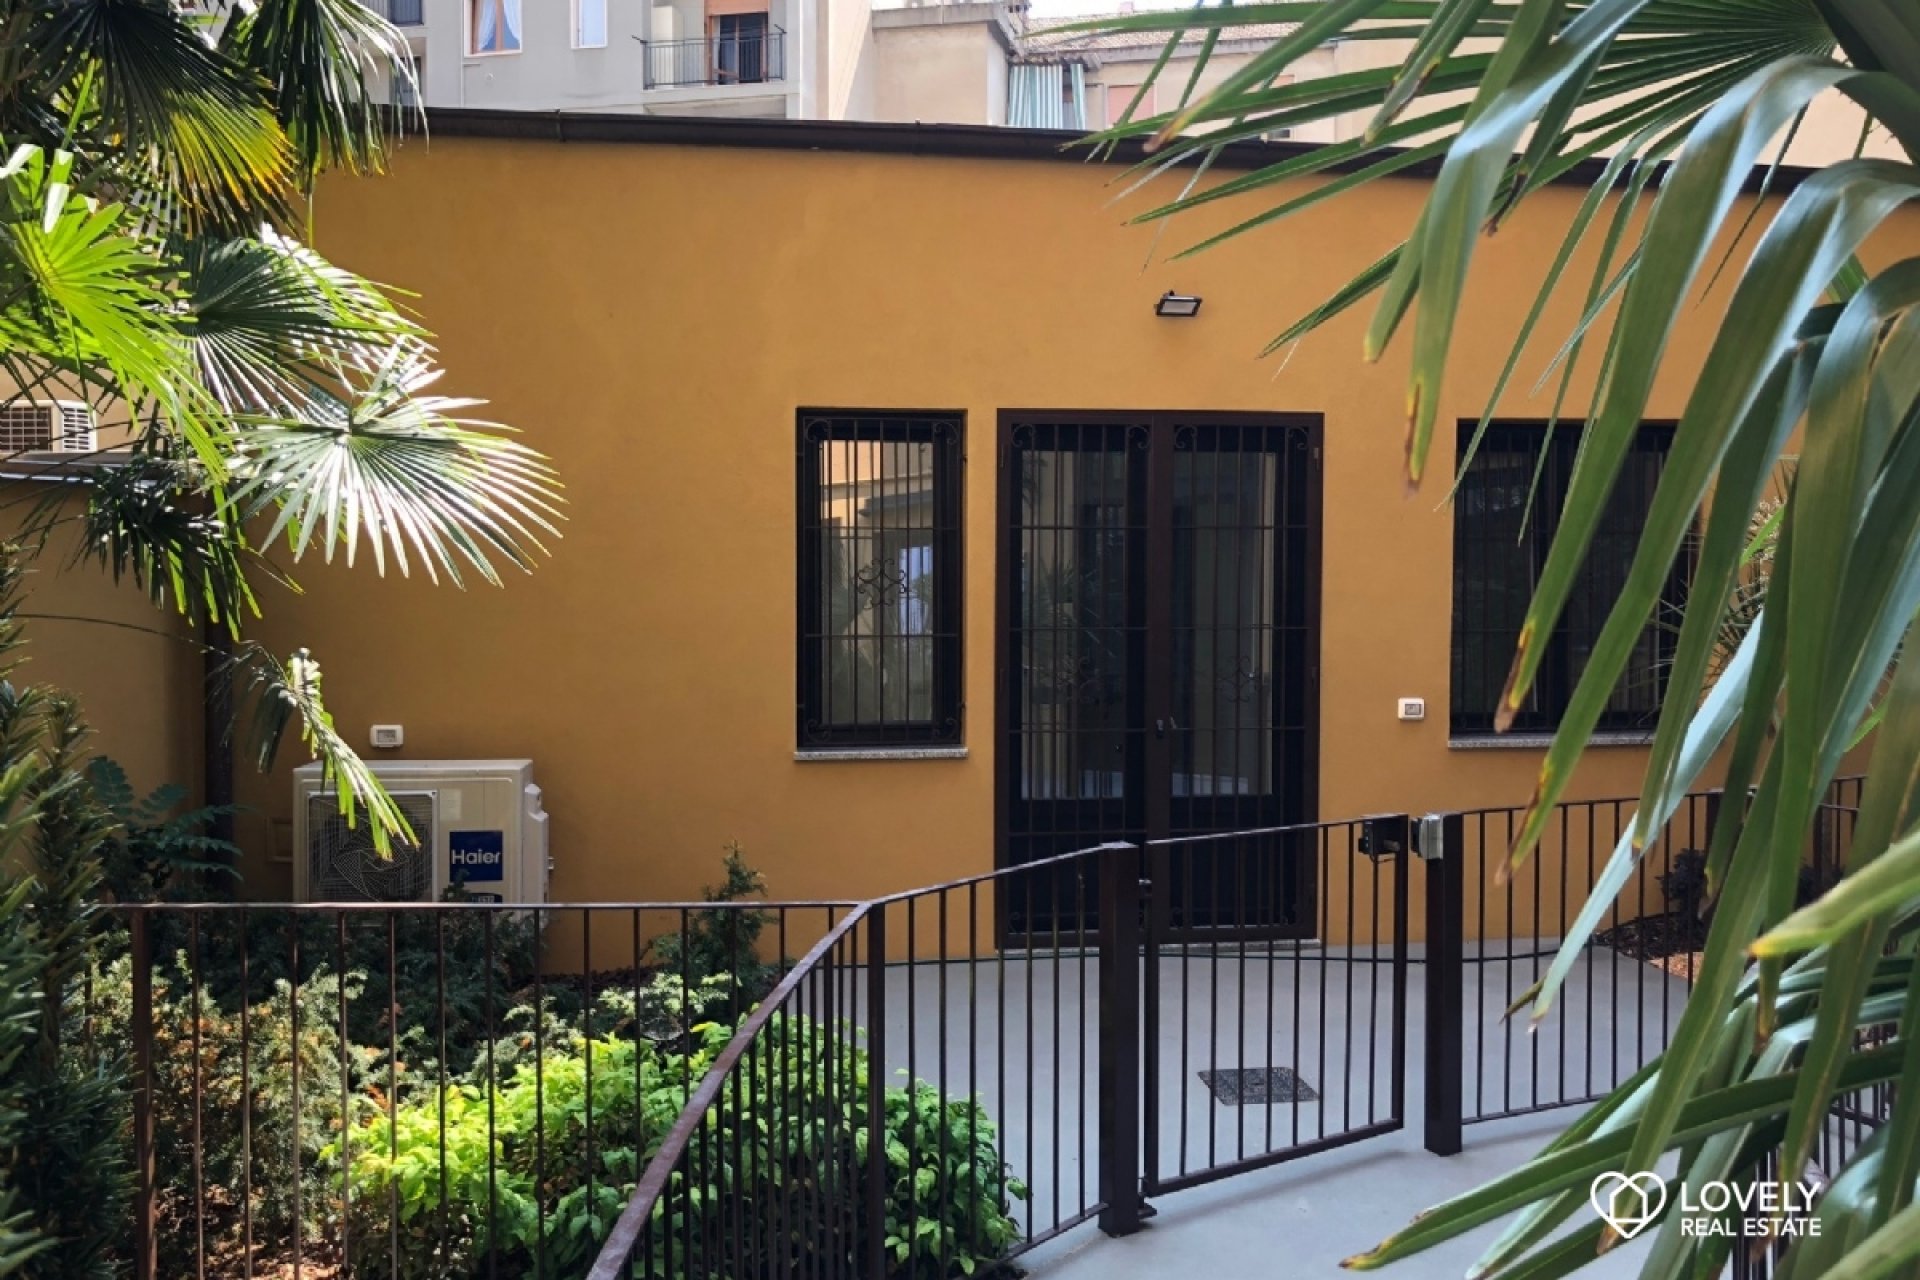 Vendita Apartment Milano - APARTMENT WITH PRIVATE GARDEN Locality Loreto - Piola - Lambrate